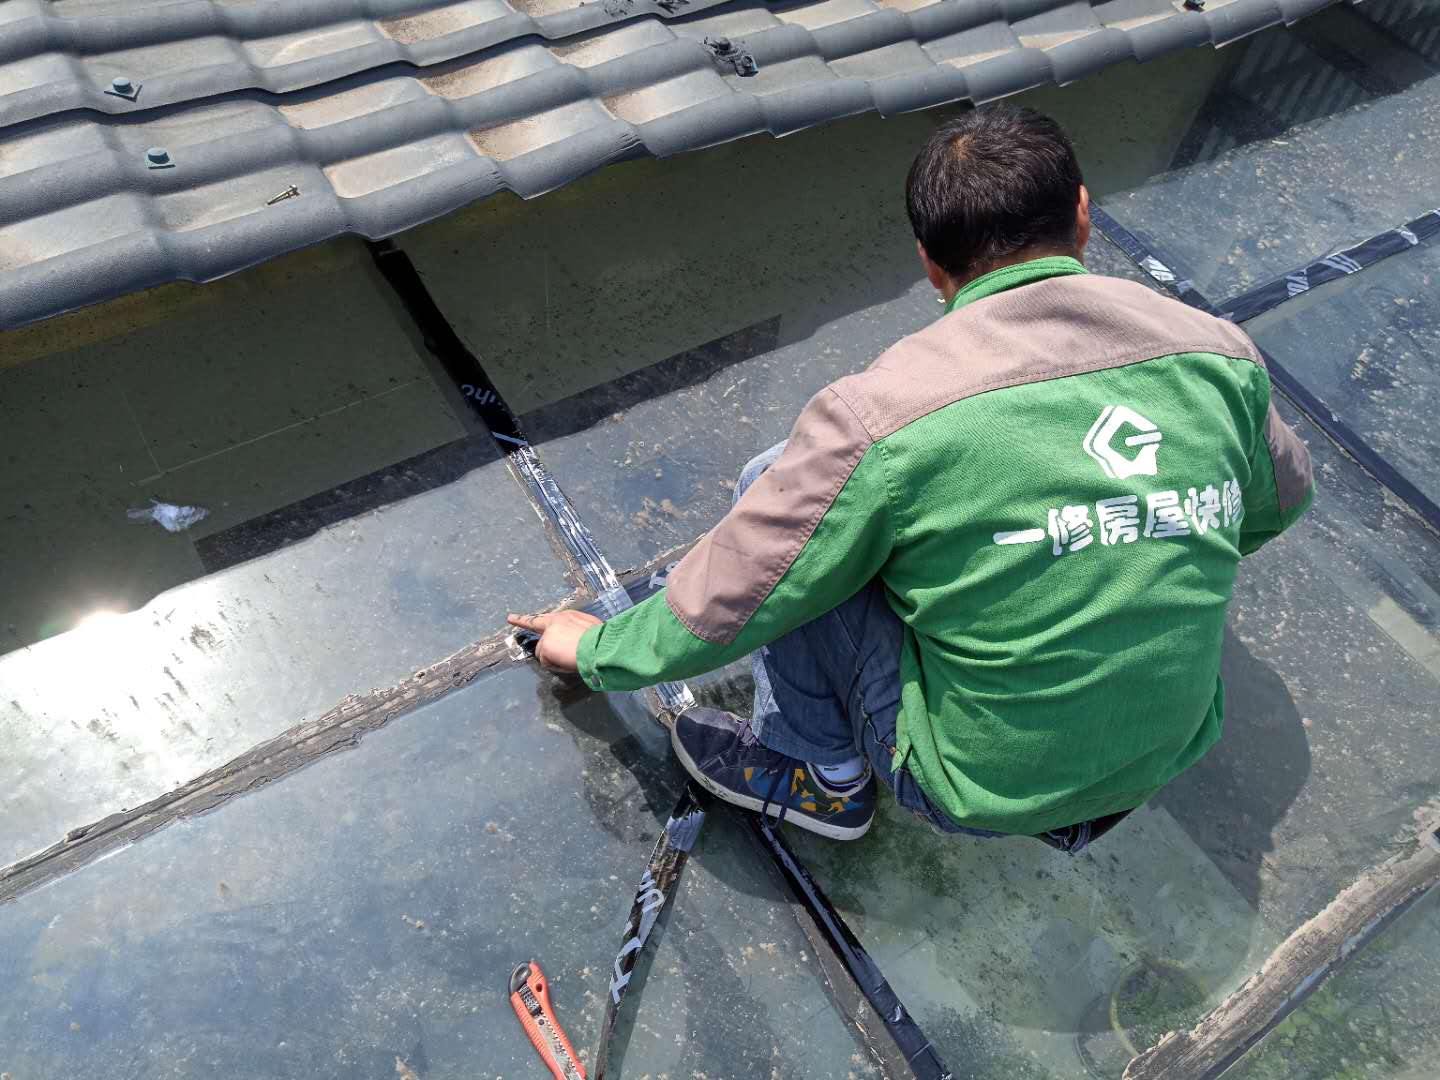 旧屋面防水怎么做,做法方法多少钱,旧屋面防水施工方案